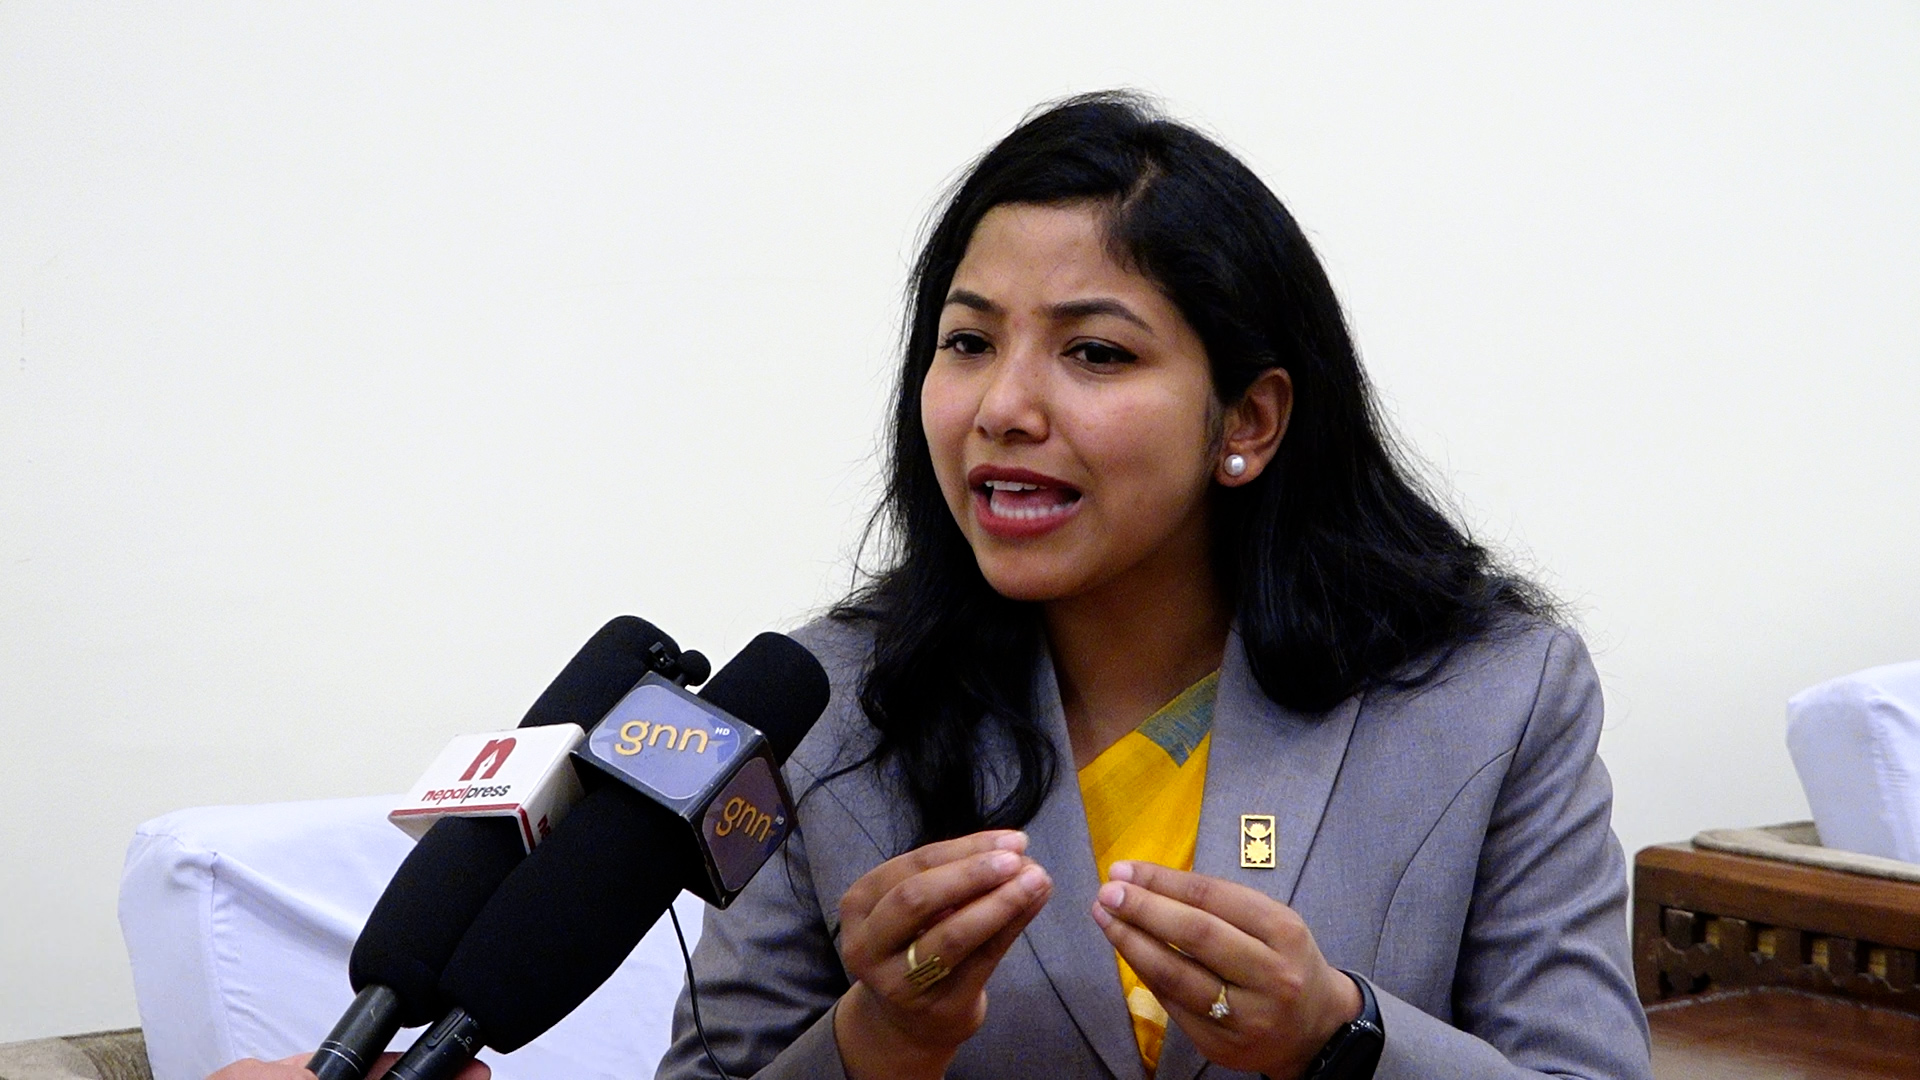 ‘जनताका न्यायाधीश’हरुको पहिलो राष्ट्रिय न्यायिक सम्मेलनः आयोजक सुनिता डंगोल के भन्छिन् ? (भिडिओ)